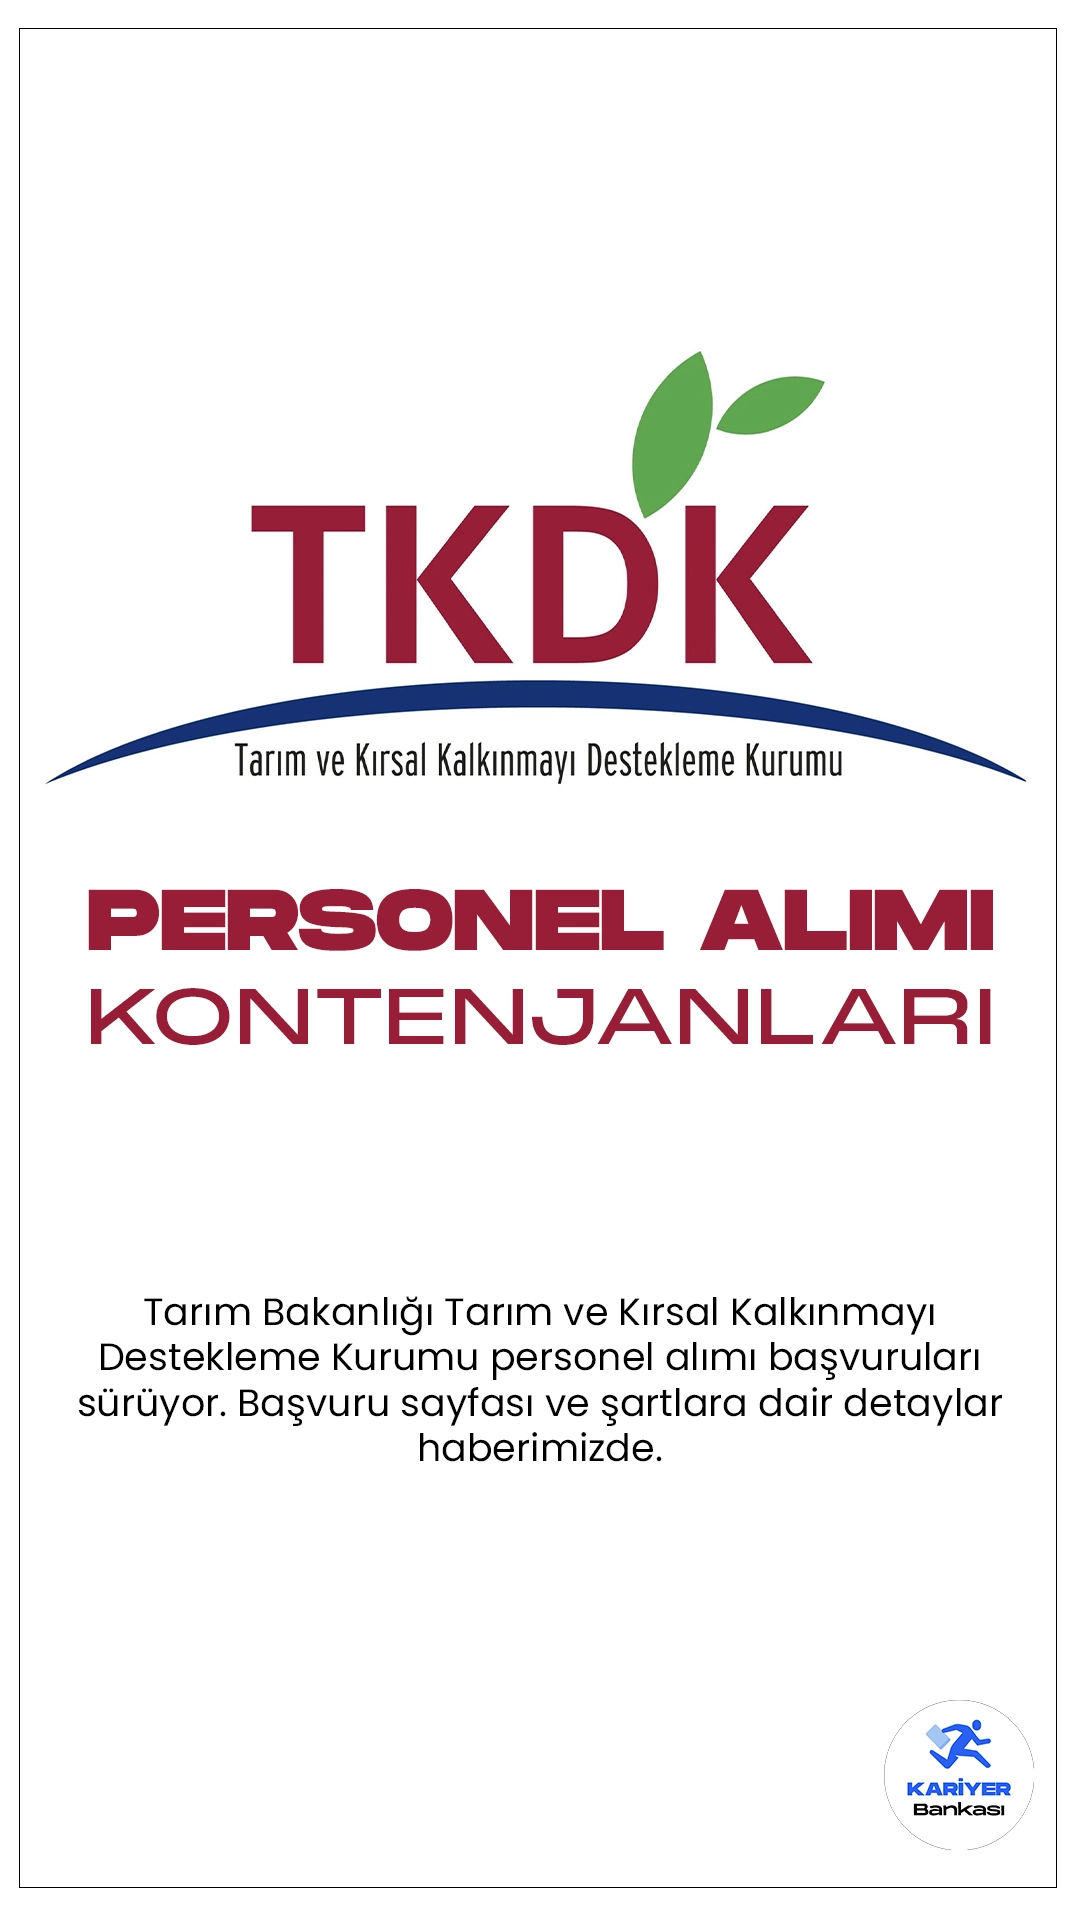 Tarım Bakanlığı TKDK personel alımı başvuruları sürüyor. Başvuru şartları, kontenjanlar ve başvuru bilgilerine dair detaylar haberimizde yer alıyor.